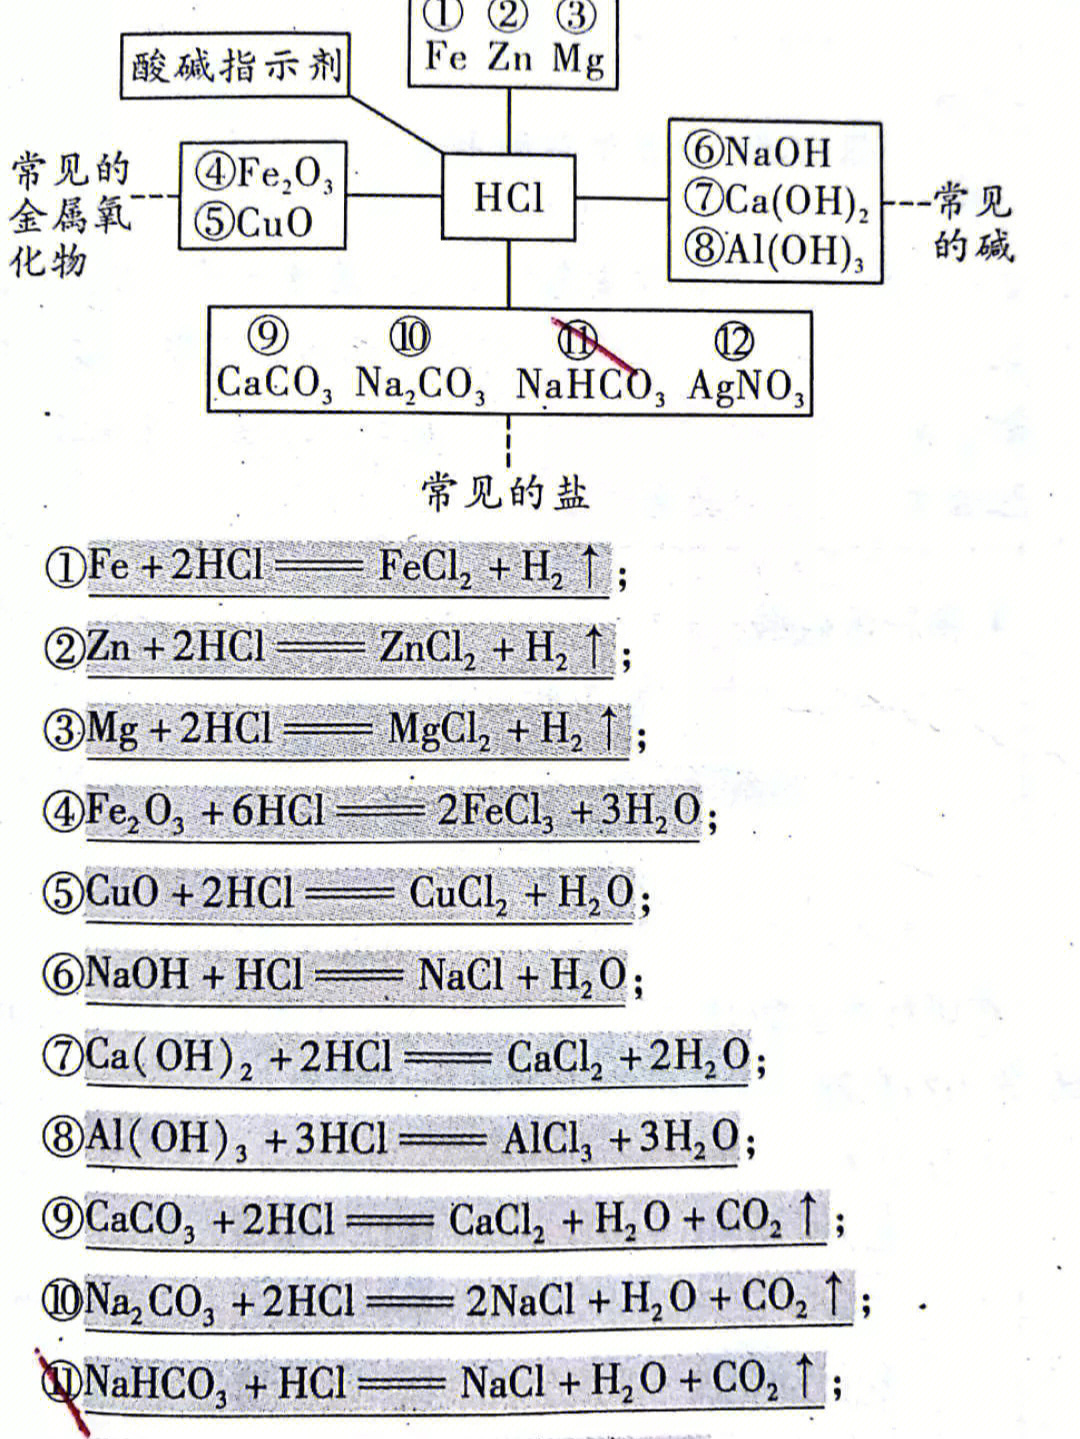 盐酸硫酸氢氧化钠氢氧化钙的化学性质